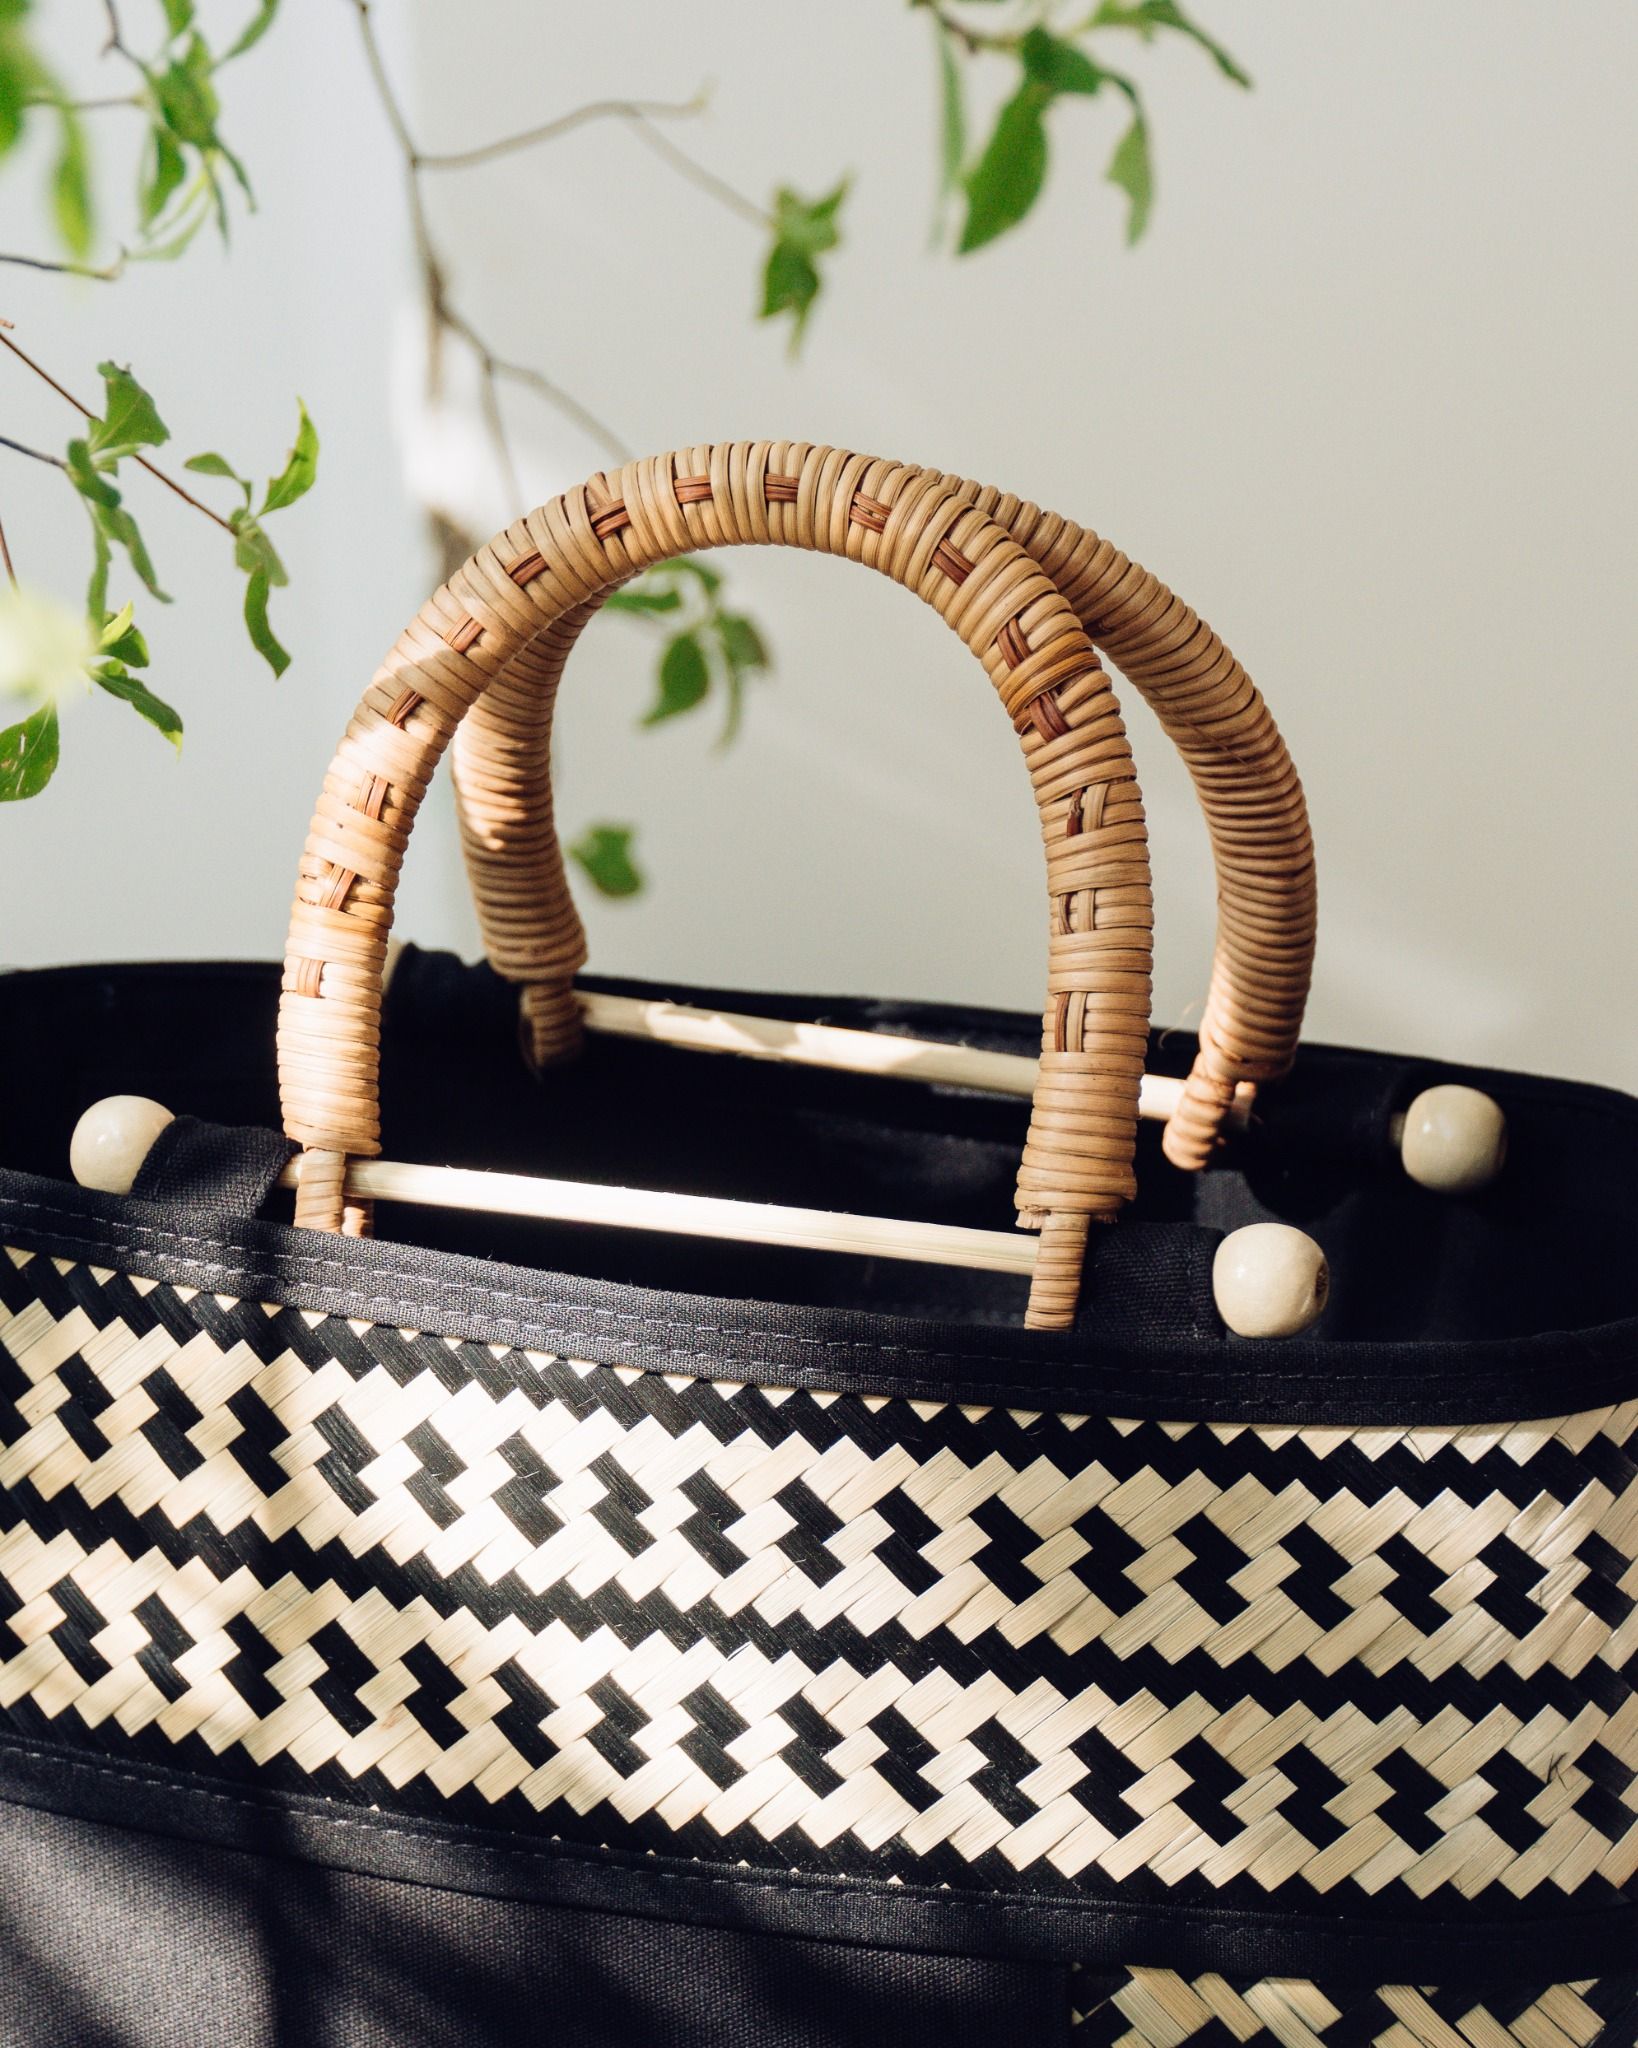  Túi vải họa tiết tre đan thủ công quai cầm gỗ kiểu dáng thanh lịch trang nhã - Mã sản phẩm HB06 